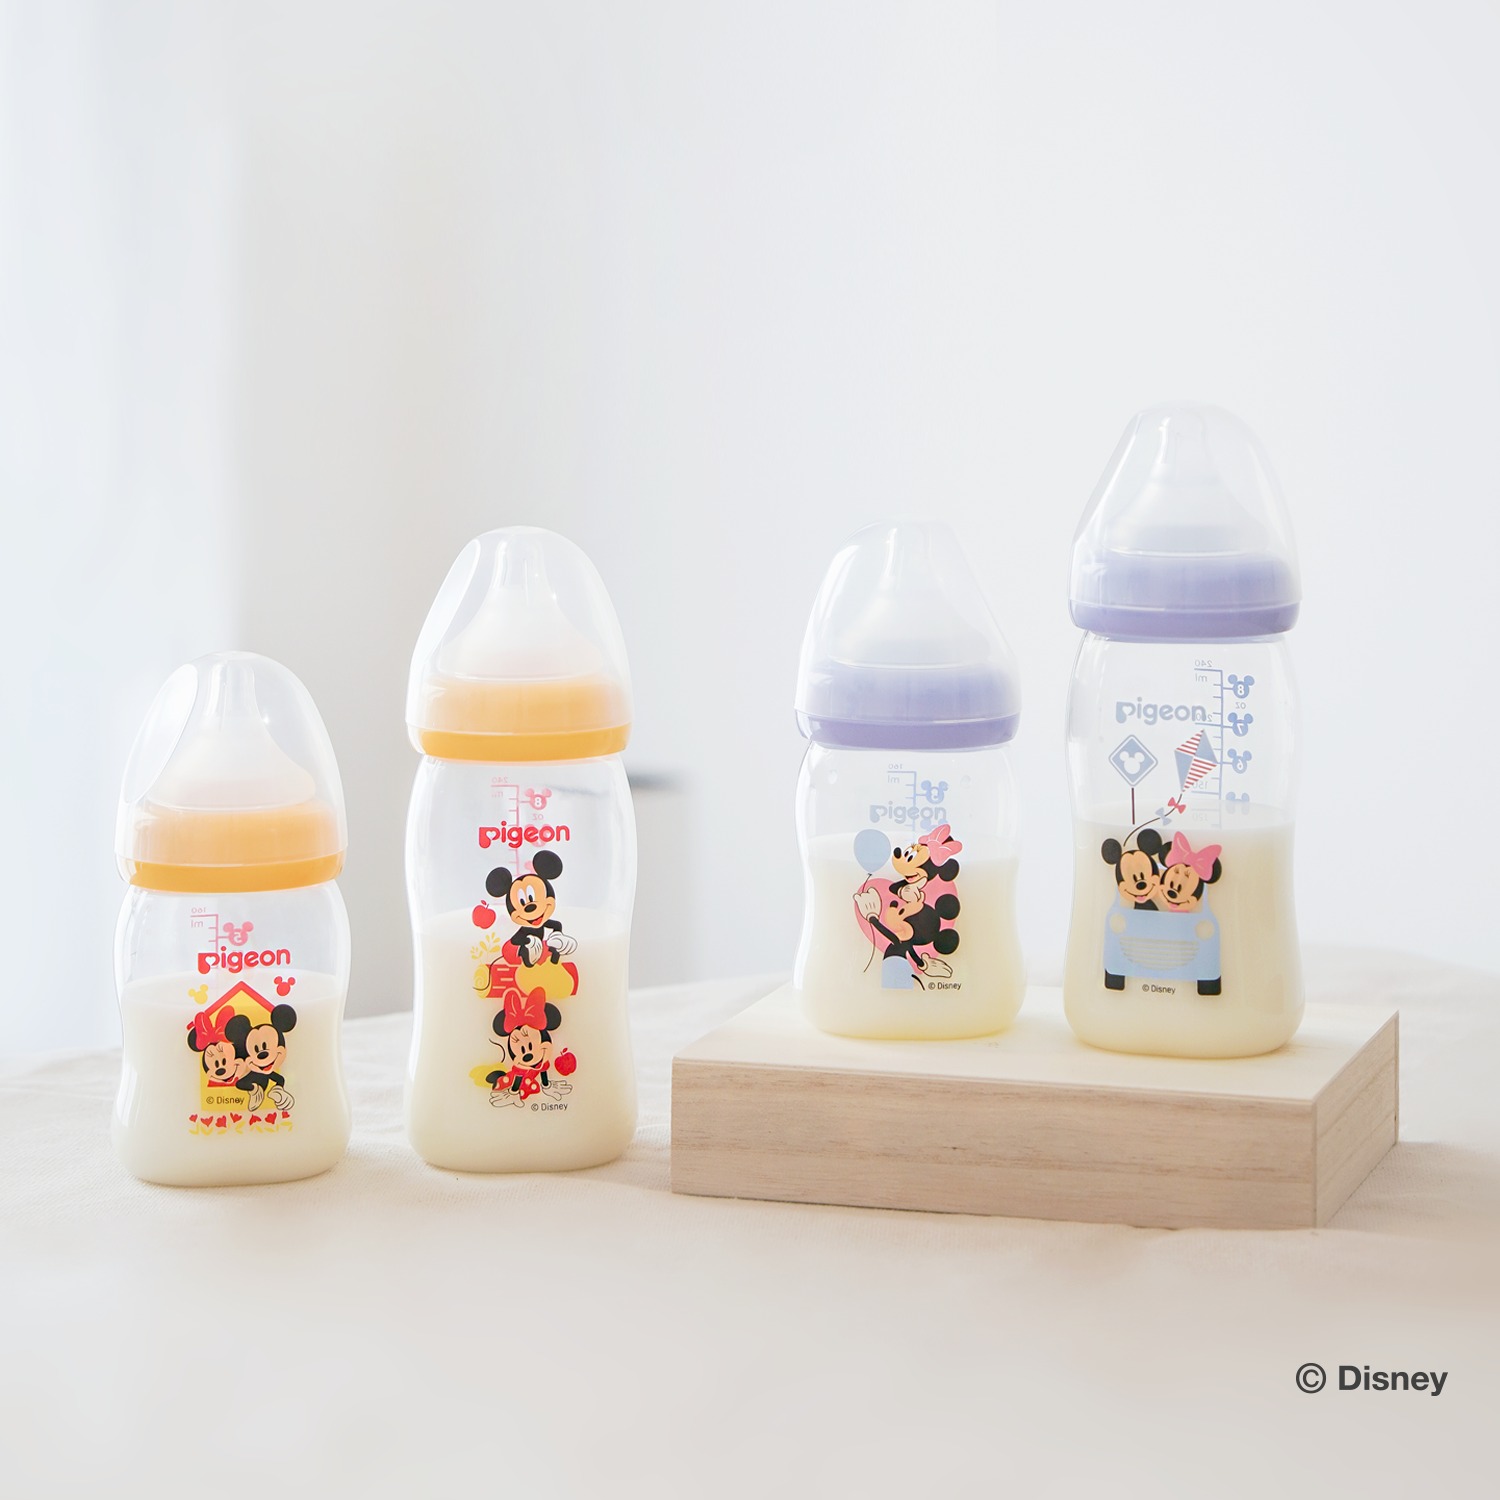 Bình Sữa Pigeon Softouch PP Plus Disney Baby - Màu Vàng